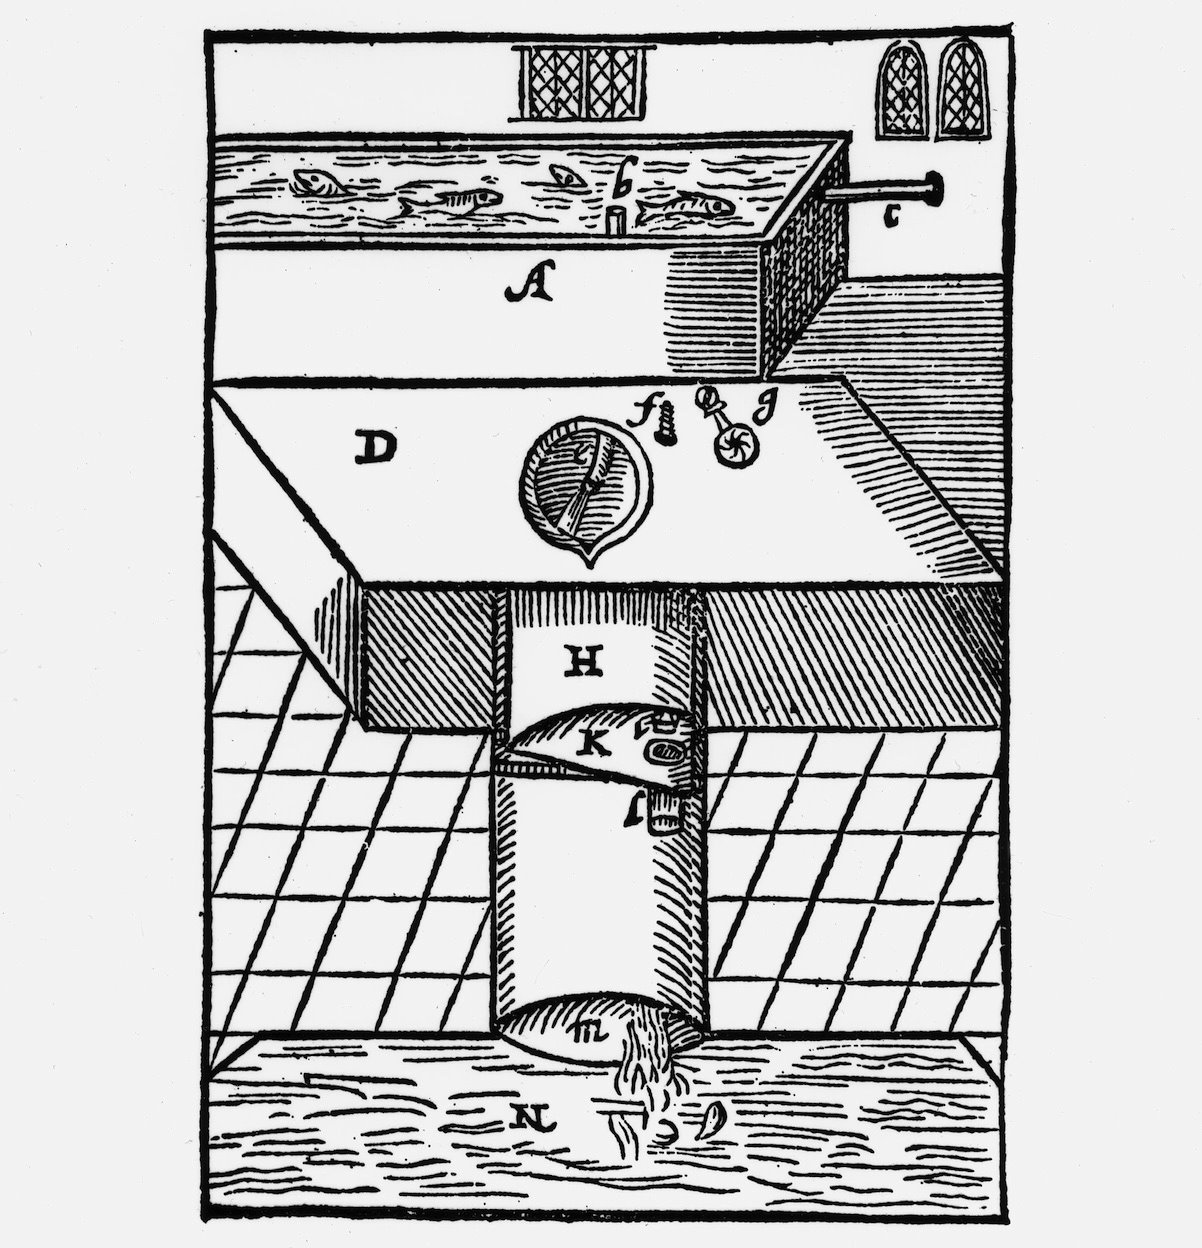 約翰·哈靈頓（John Harington）在其1596年的諷刺小冊子中首次描述的抽水馬桶式樣，展示了現代衝水馬桶的兩個元素：衝水系統和閥門